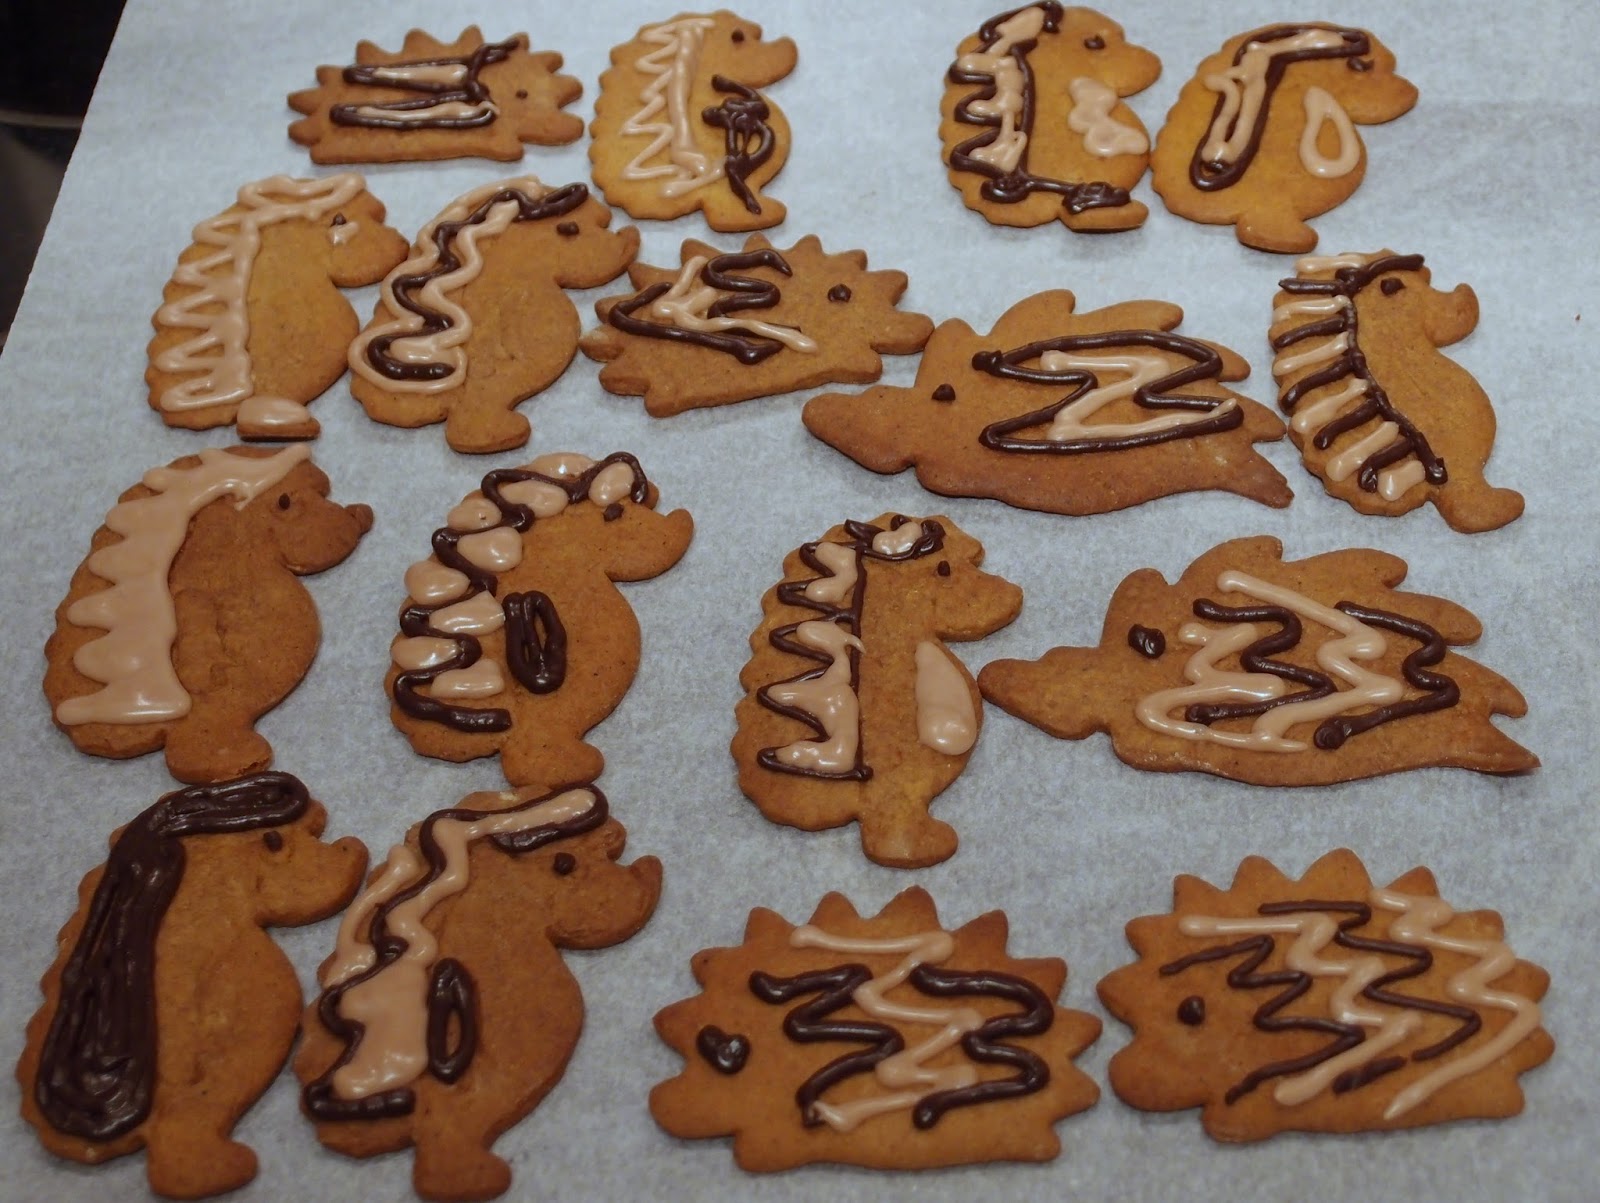 The VegHog: Gingerbread cookies